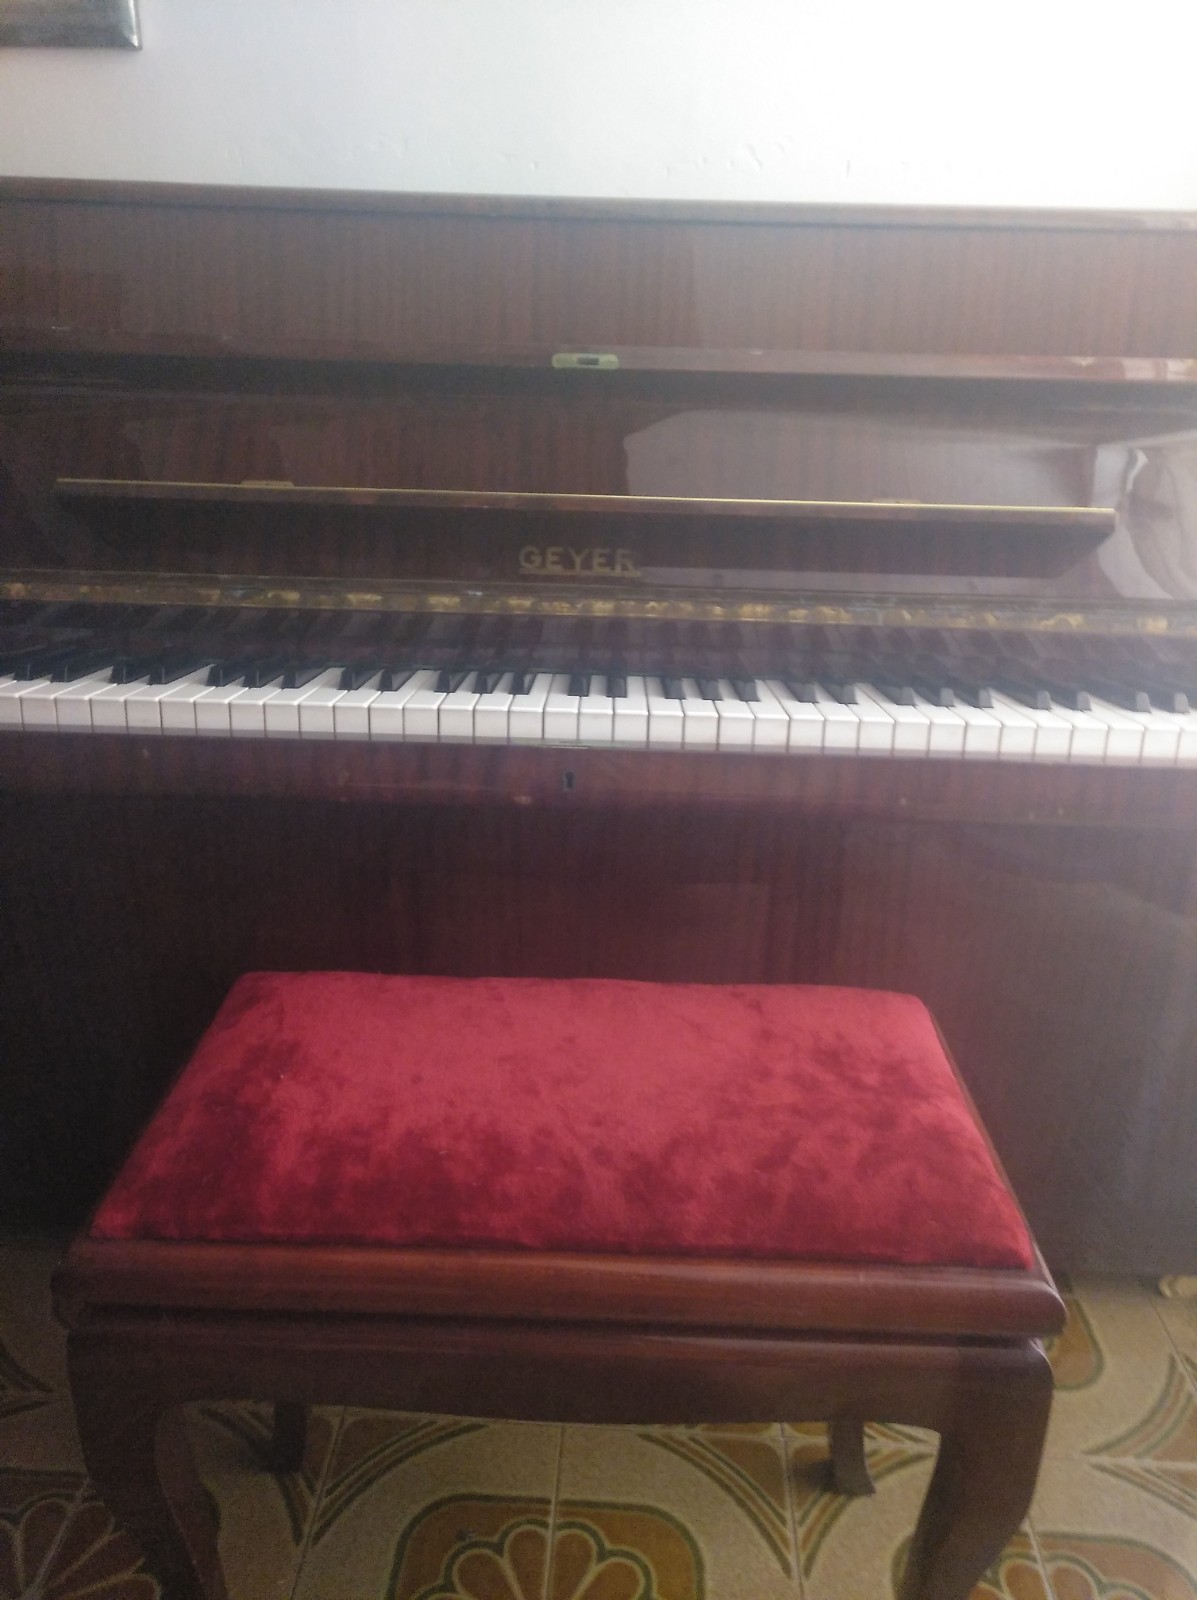 second hand piano mallorca